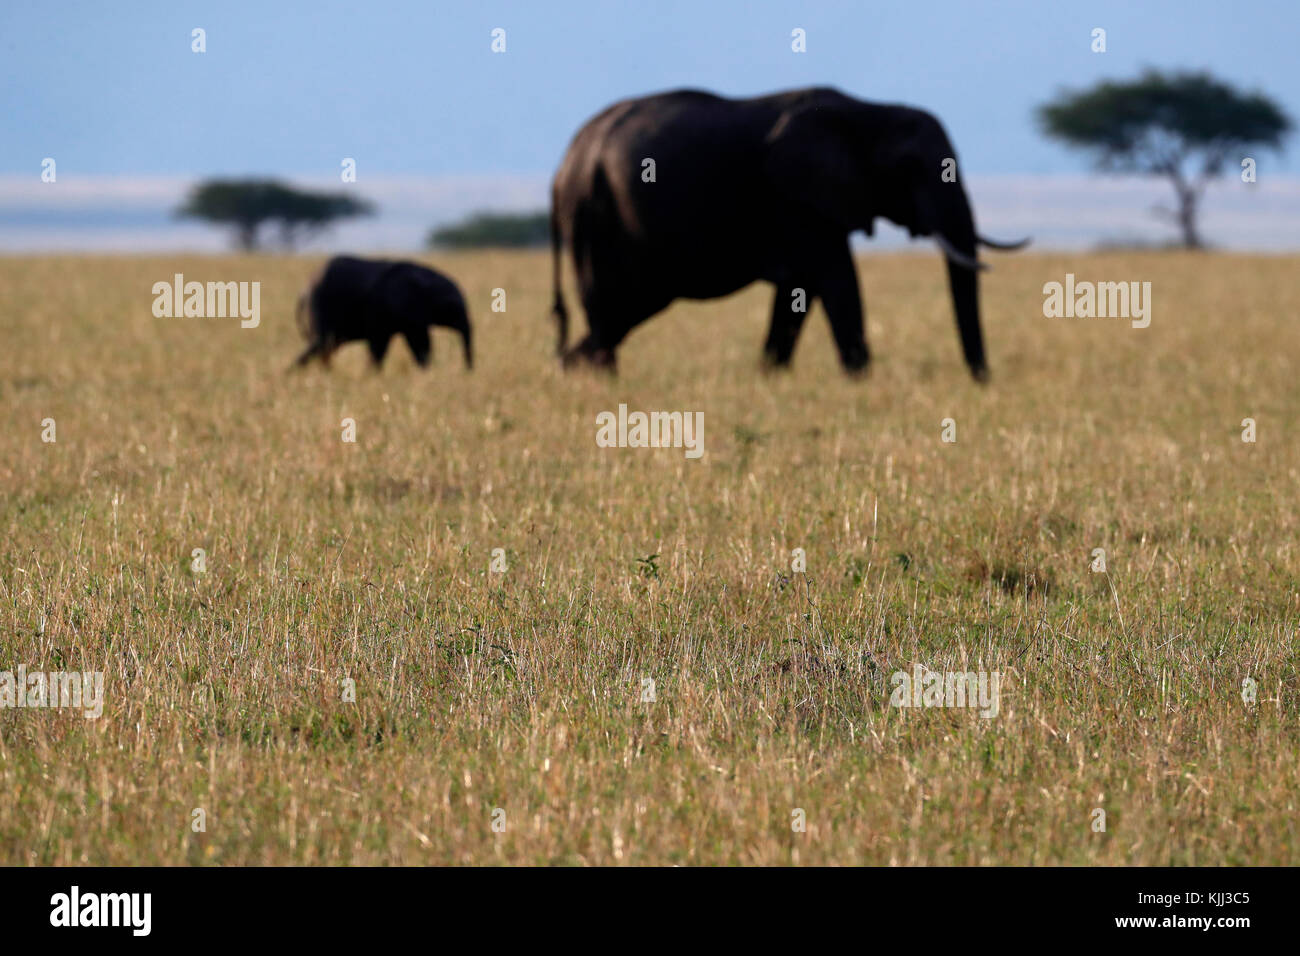 Afrikanische Elefanten (Loxodonta africana) in der Savanne. Mutter und Baby Silhouetten. Masai Mara Game Reserve. Kenia. Stockfoto